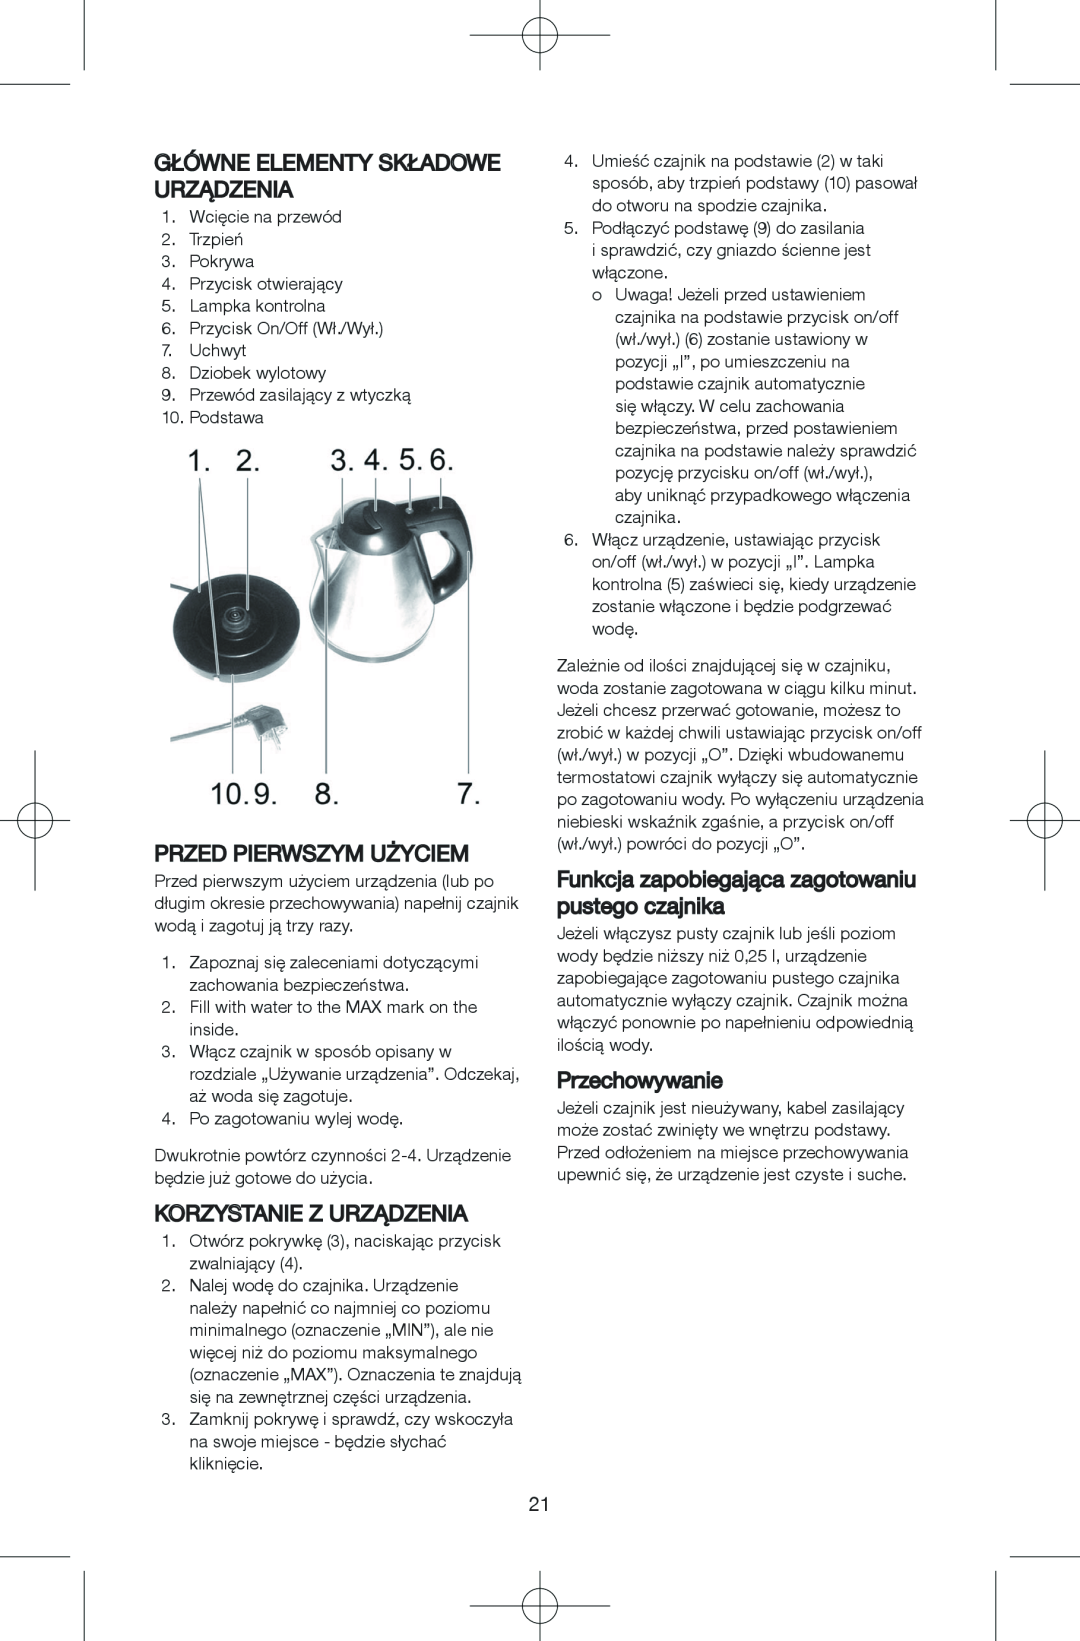 Melissa 645-244 manual Główneelementy Składoweurządzenia, Przed Pierwszym Użyciem, Korzystaniez Urządzenia, Przechowywanie 